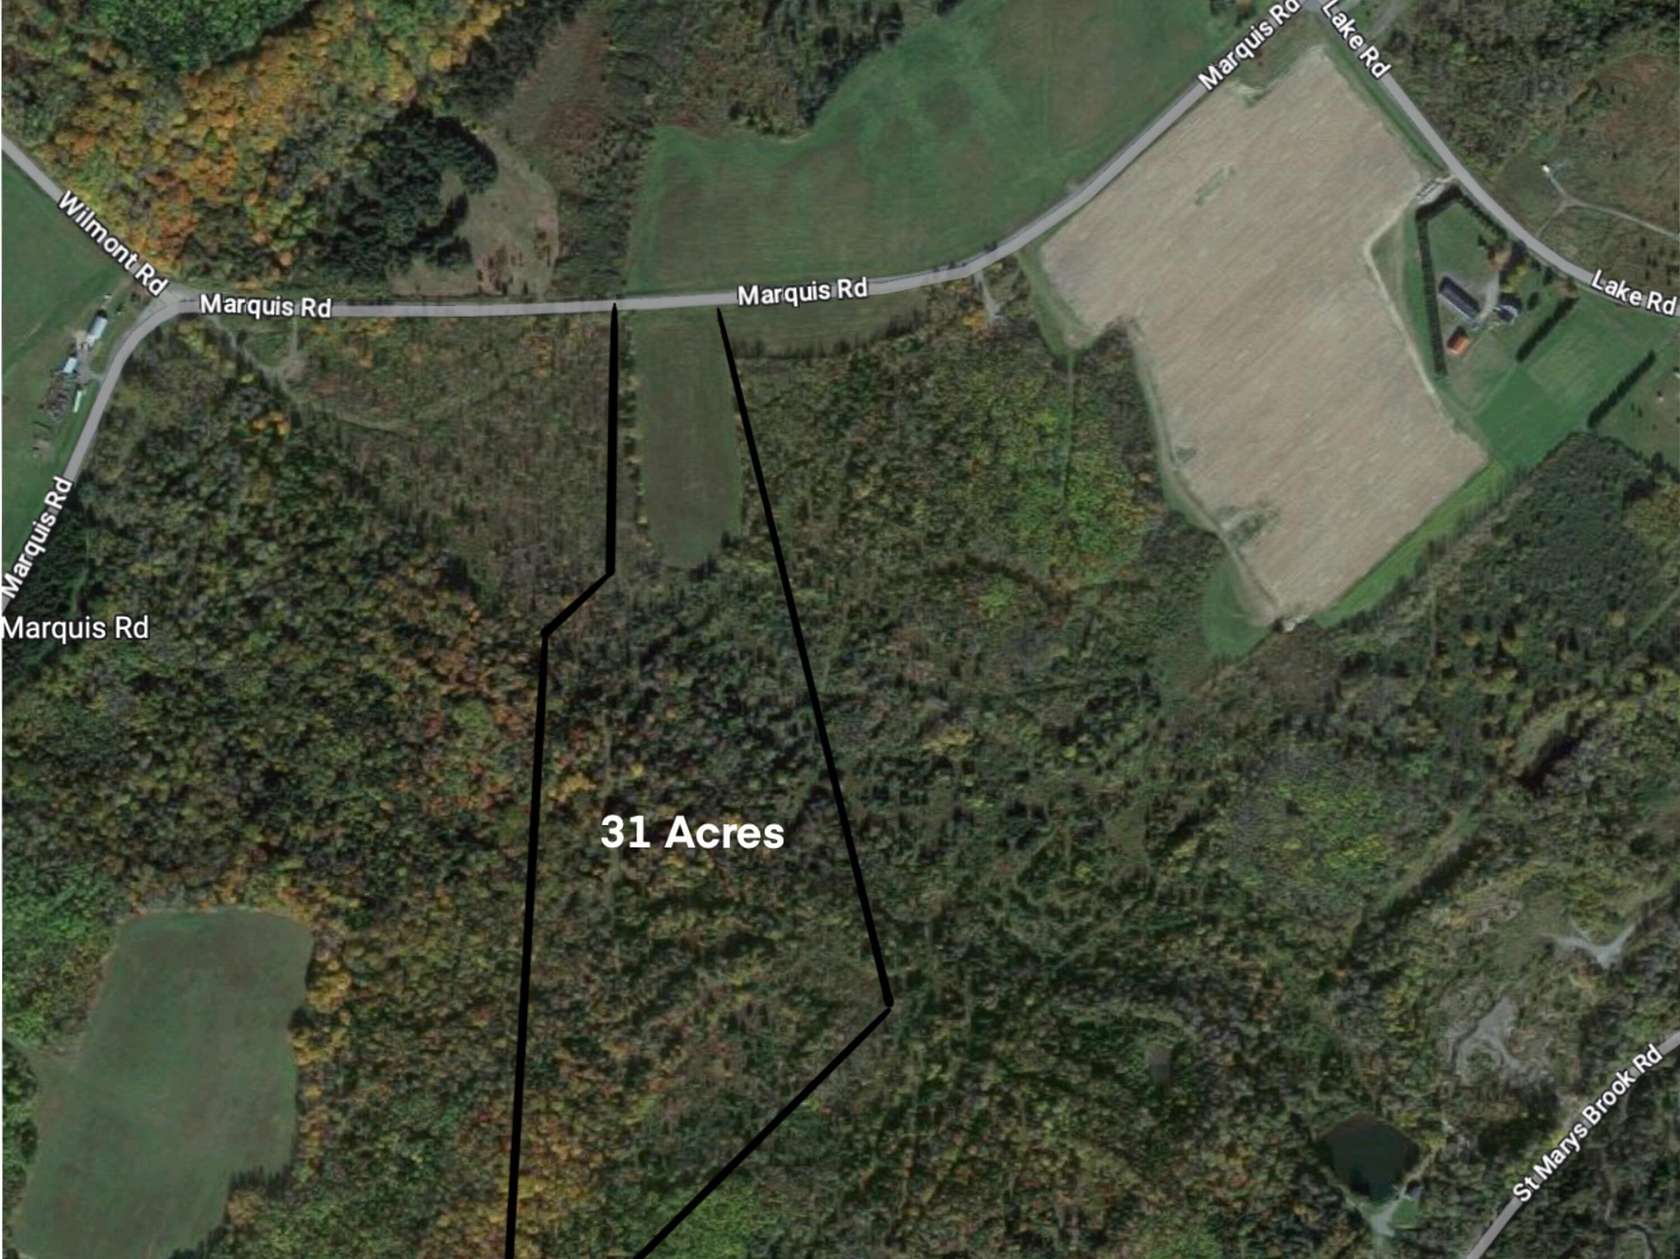 31 Acres of Land for Sale in Van Buren, Maine